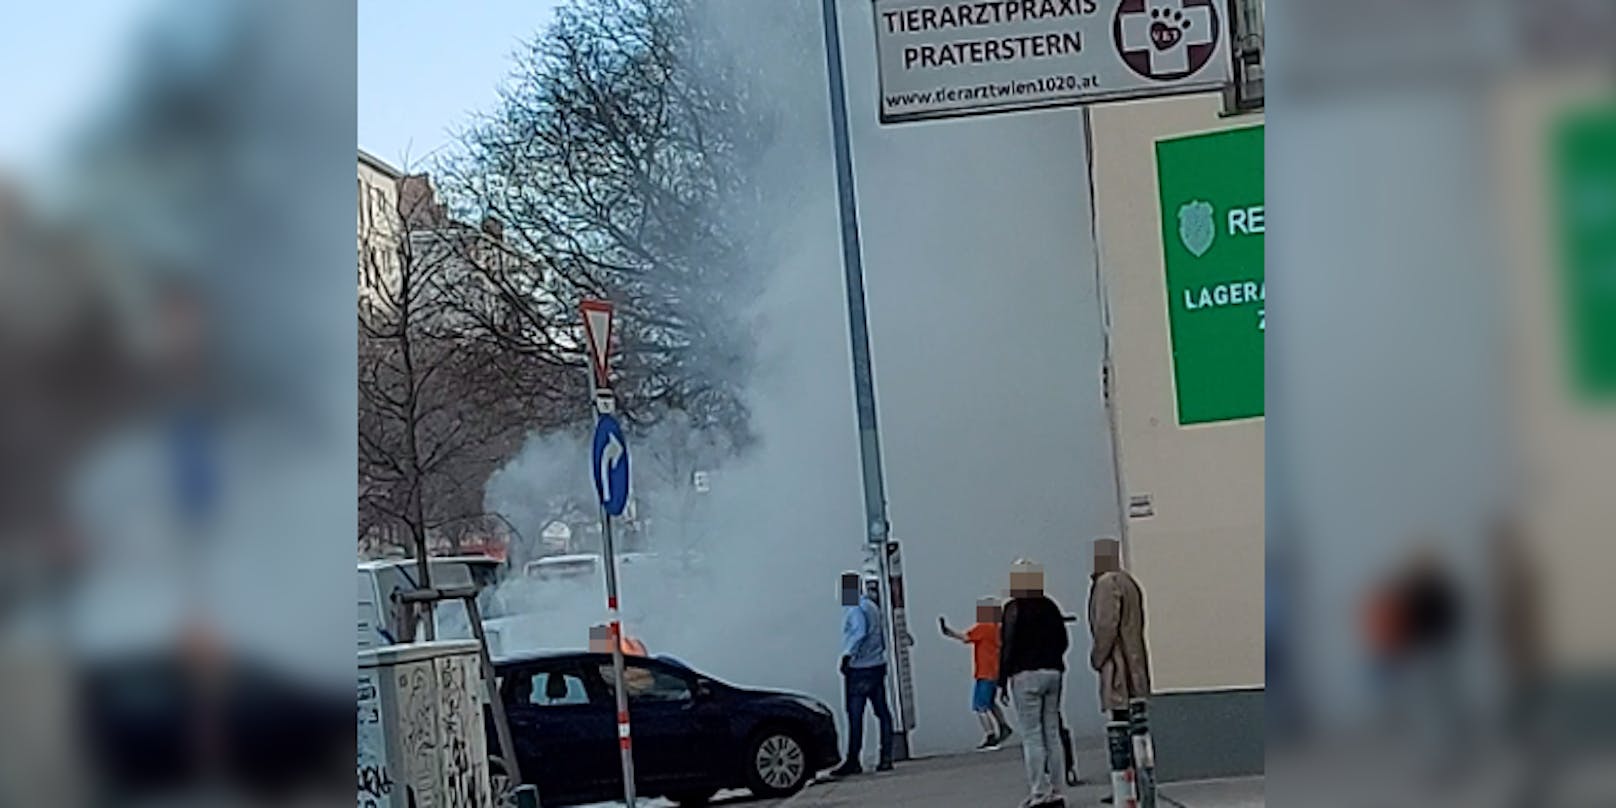 In Wien-Leopoldstadt rauchte ein Auto ab.